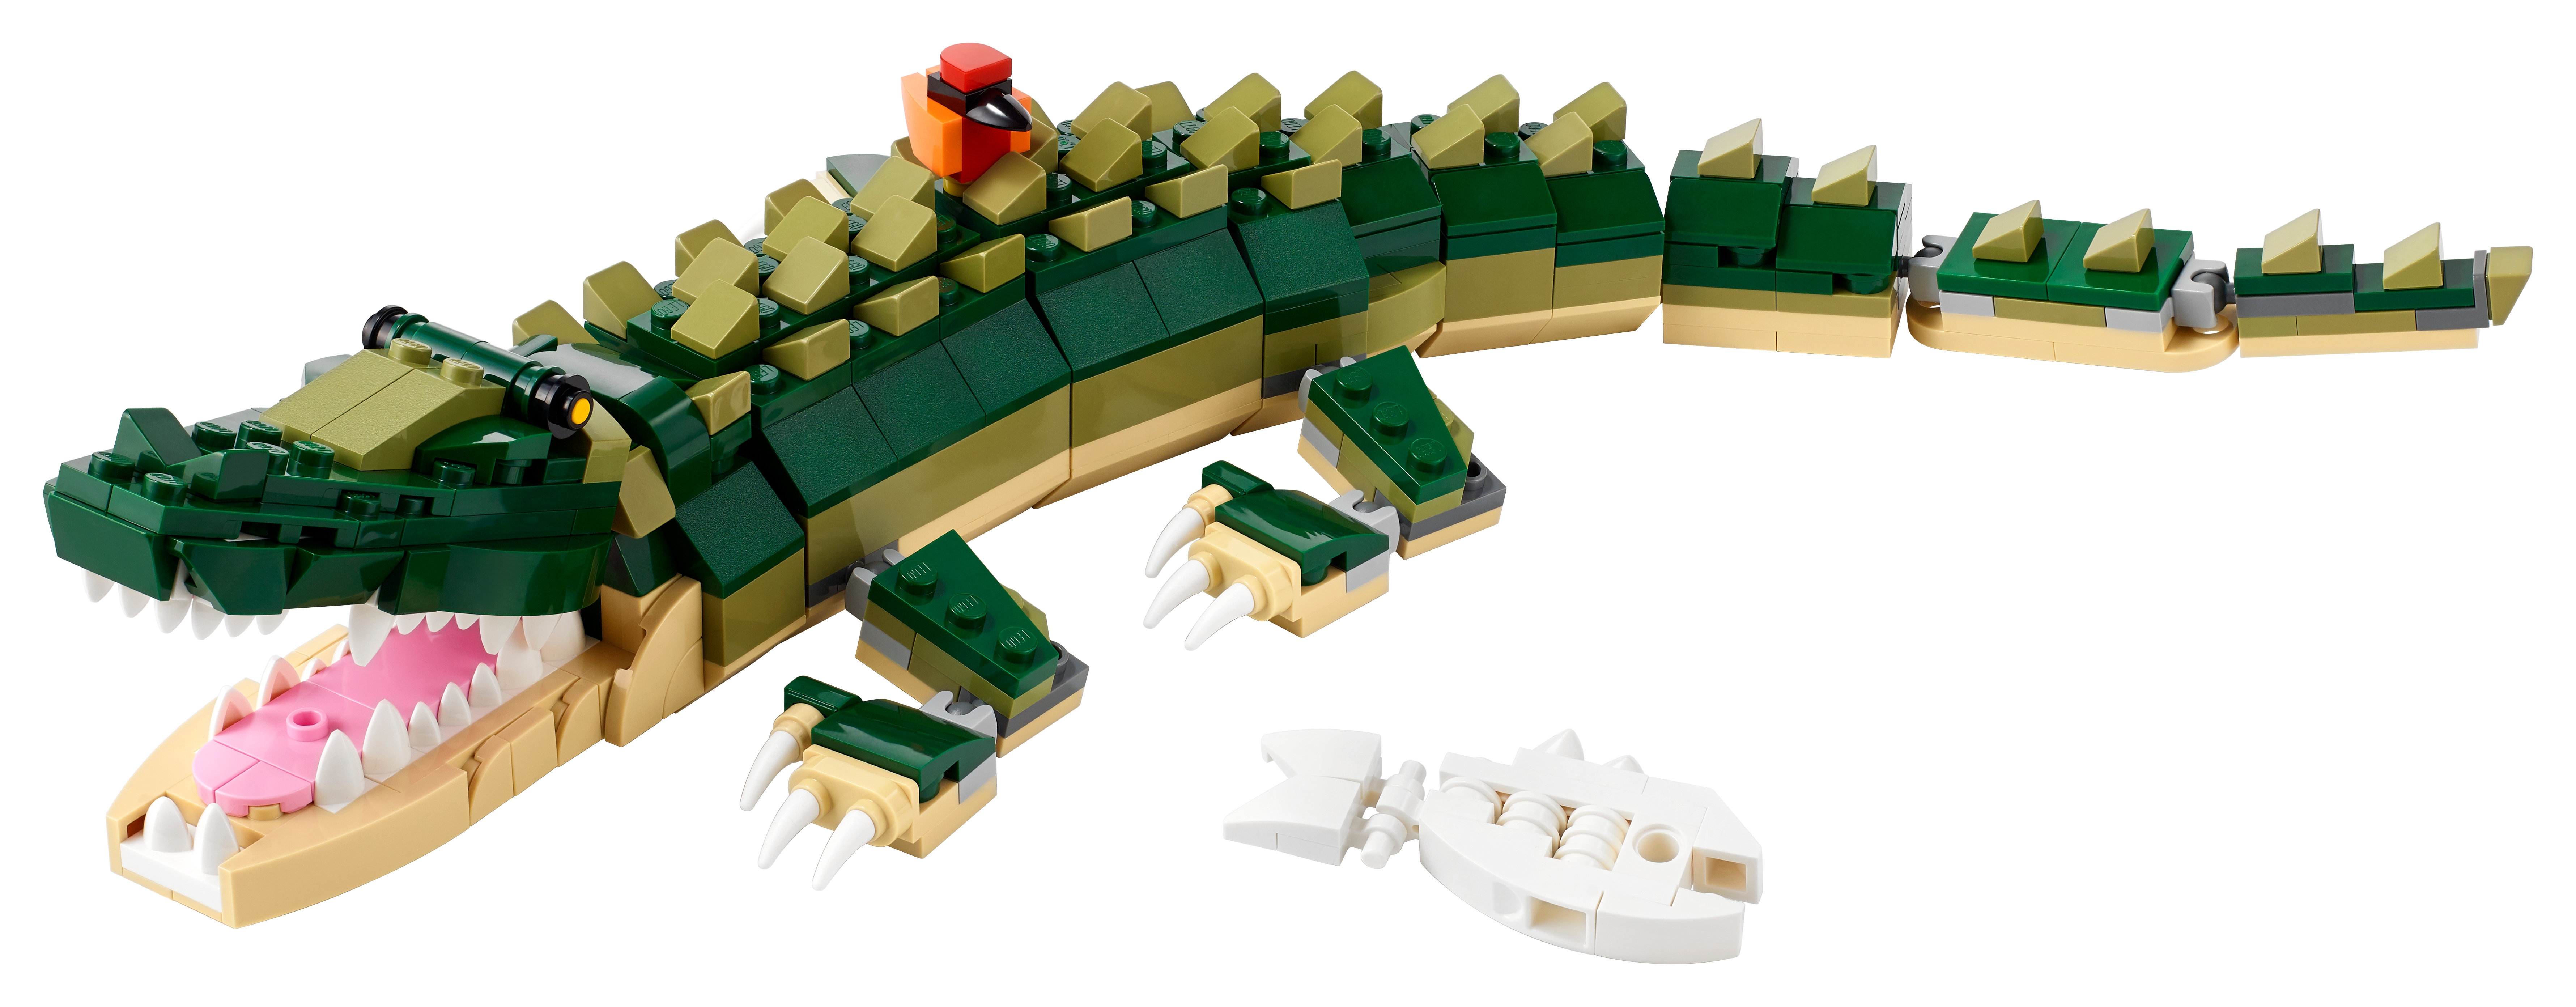 LEGO Green Alligator Gator or Dragon Tail 